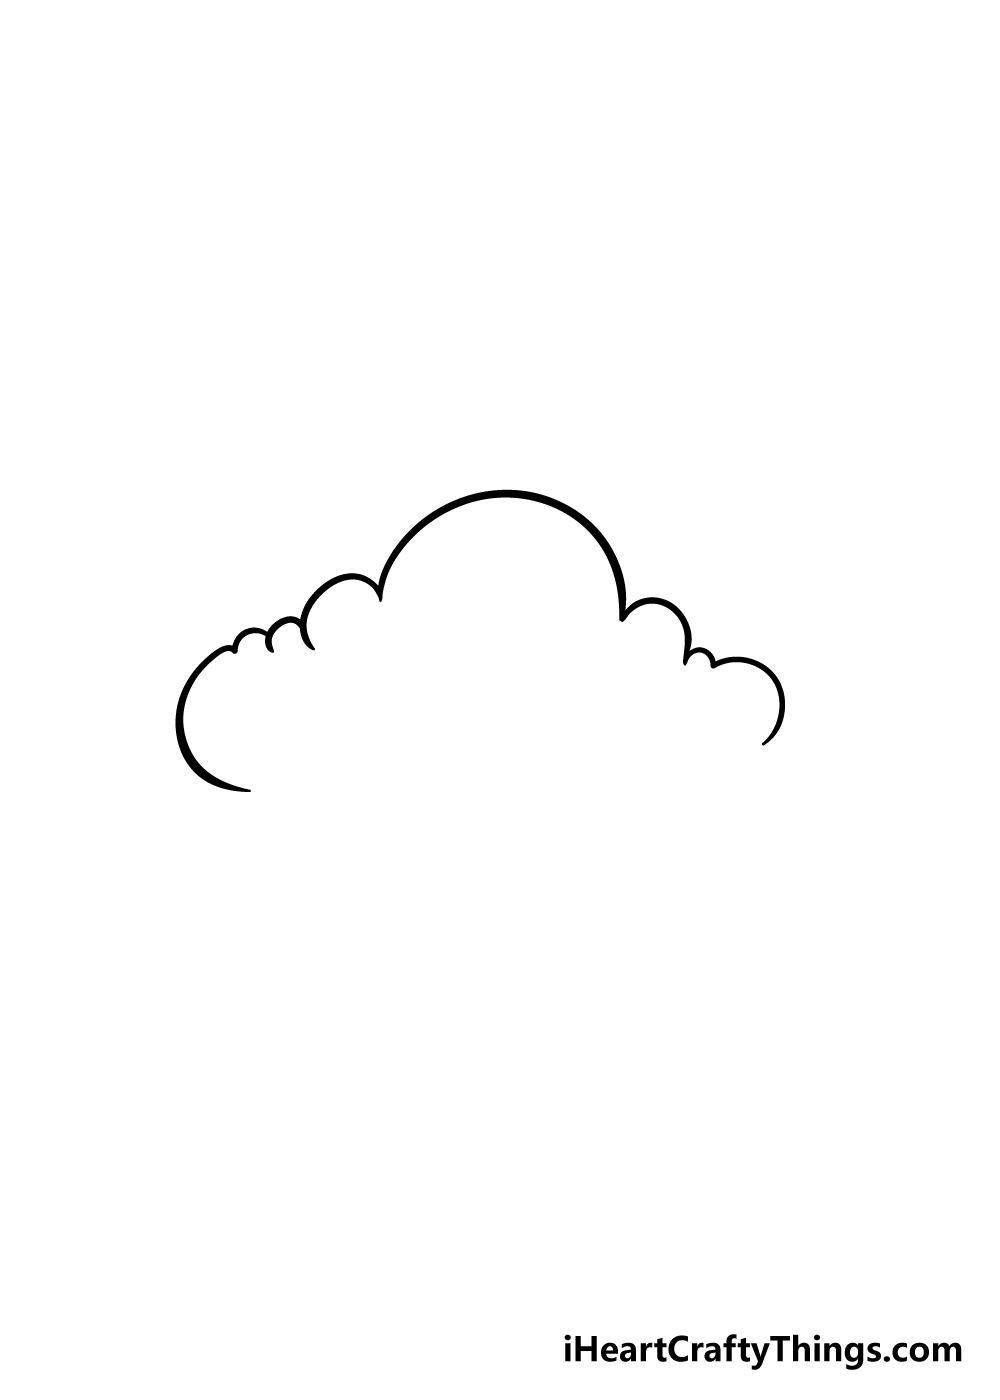 Cloud 3 1 - Hướng dẫn cách vẽ đám mây đơn giản với 6 bước cơ bản